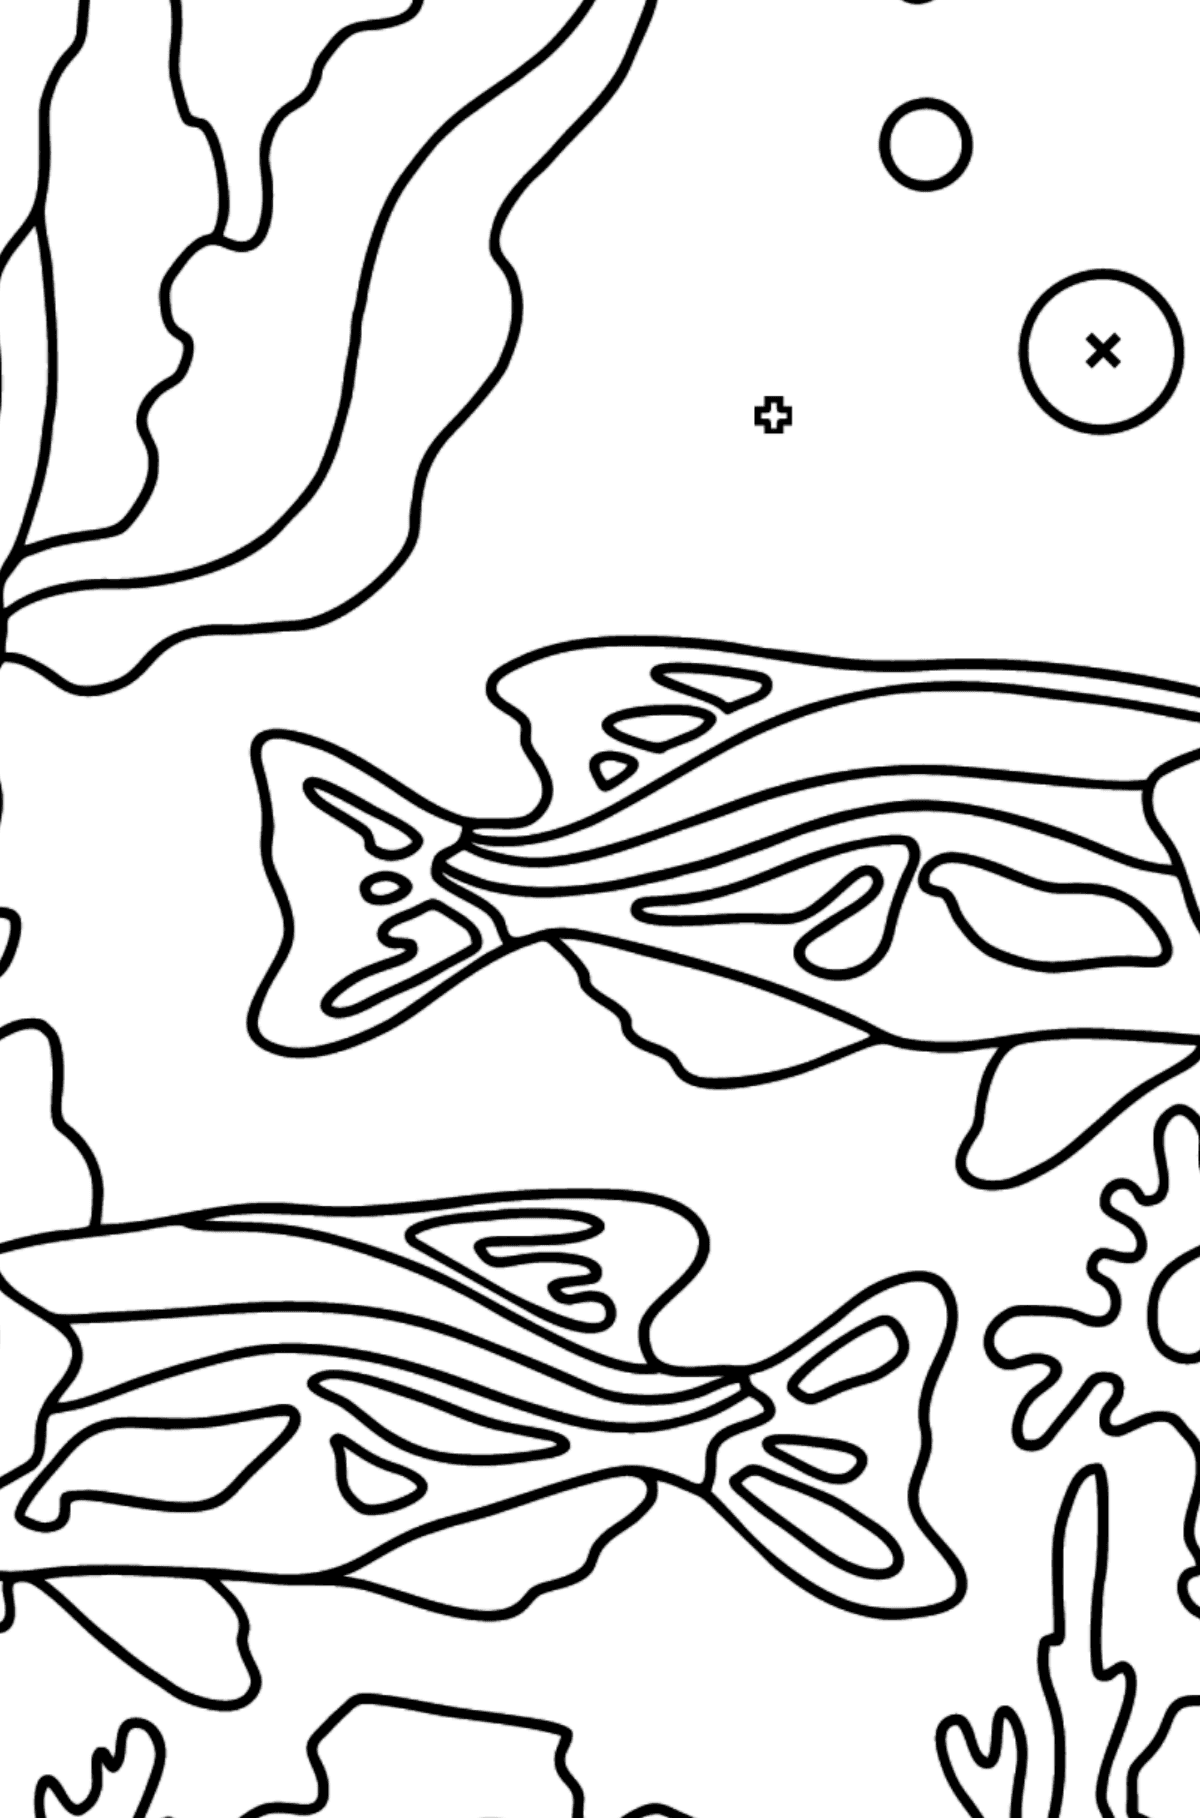 Tegning til fargelegging fisketank (enkelt) - Fargelegge etter symboler og geometriske former for barn